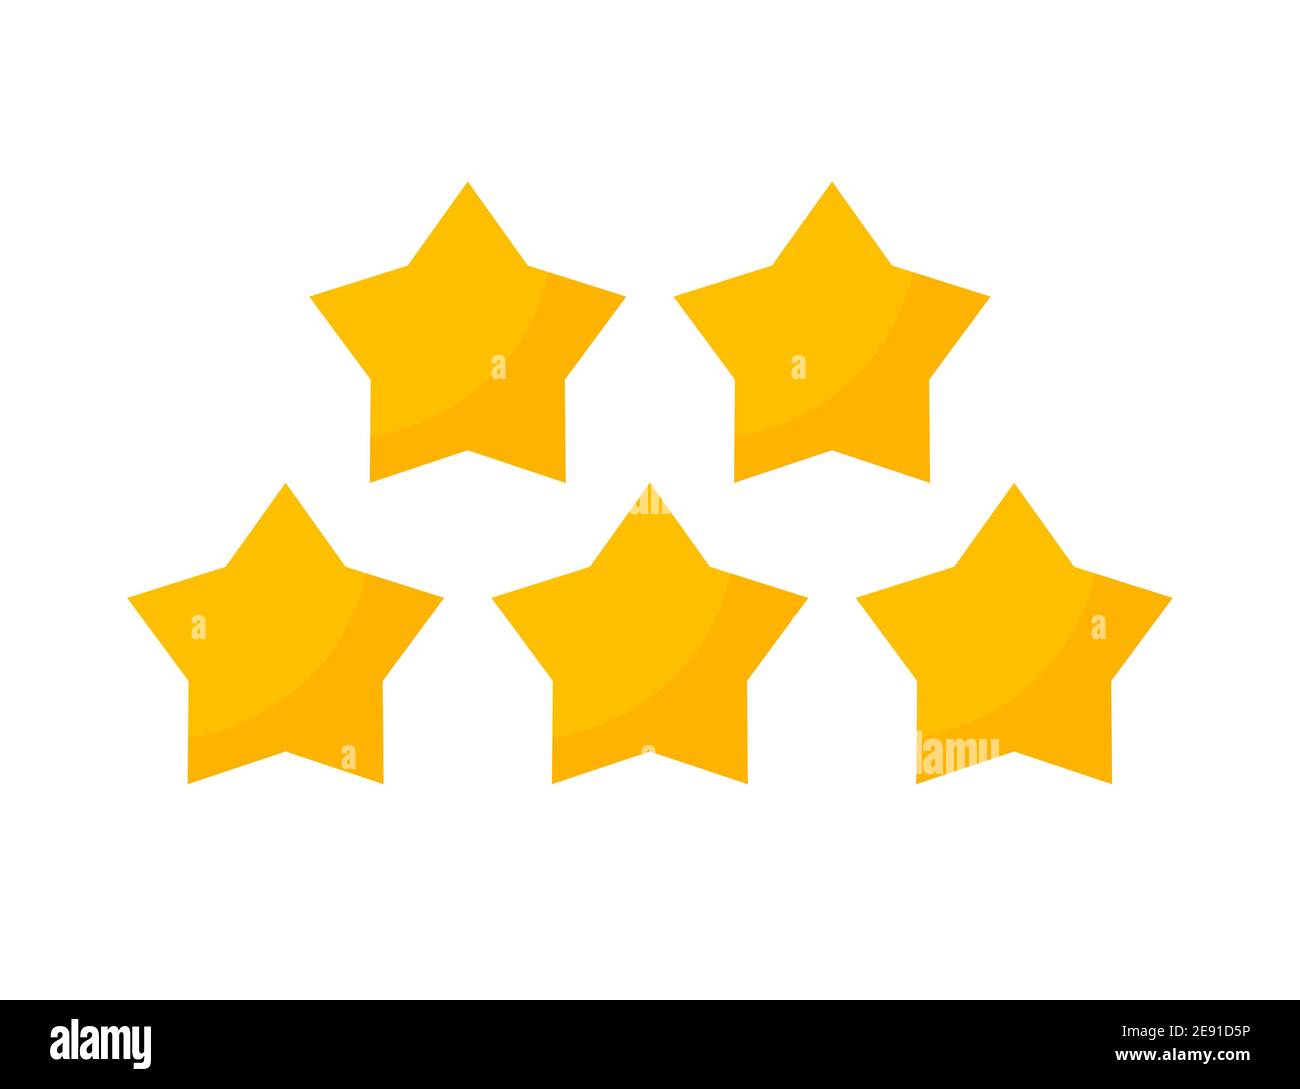 5 out of 5 stars. 5 Желтых звезд. Звезды 5 конечные желтые. 5 Звезд золото. Звездочки выстроенные в ряд.